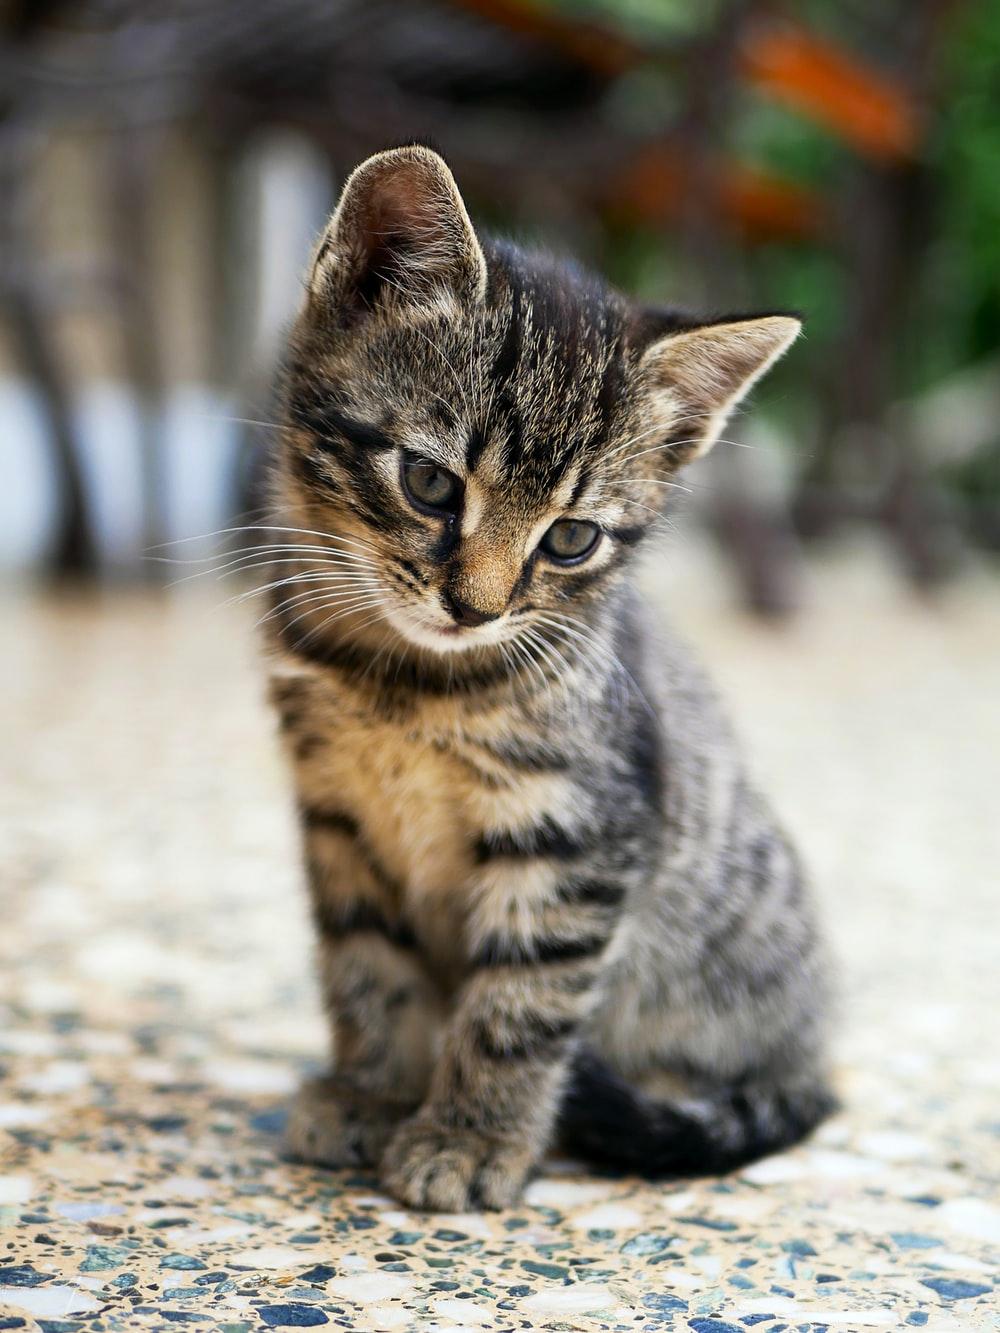 Tổng hợp hình ảnh chú mèo mướp tuyệt đẹp, đáng yêu - [Kích thước hình ảnh: 1000x1333 px]